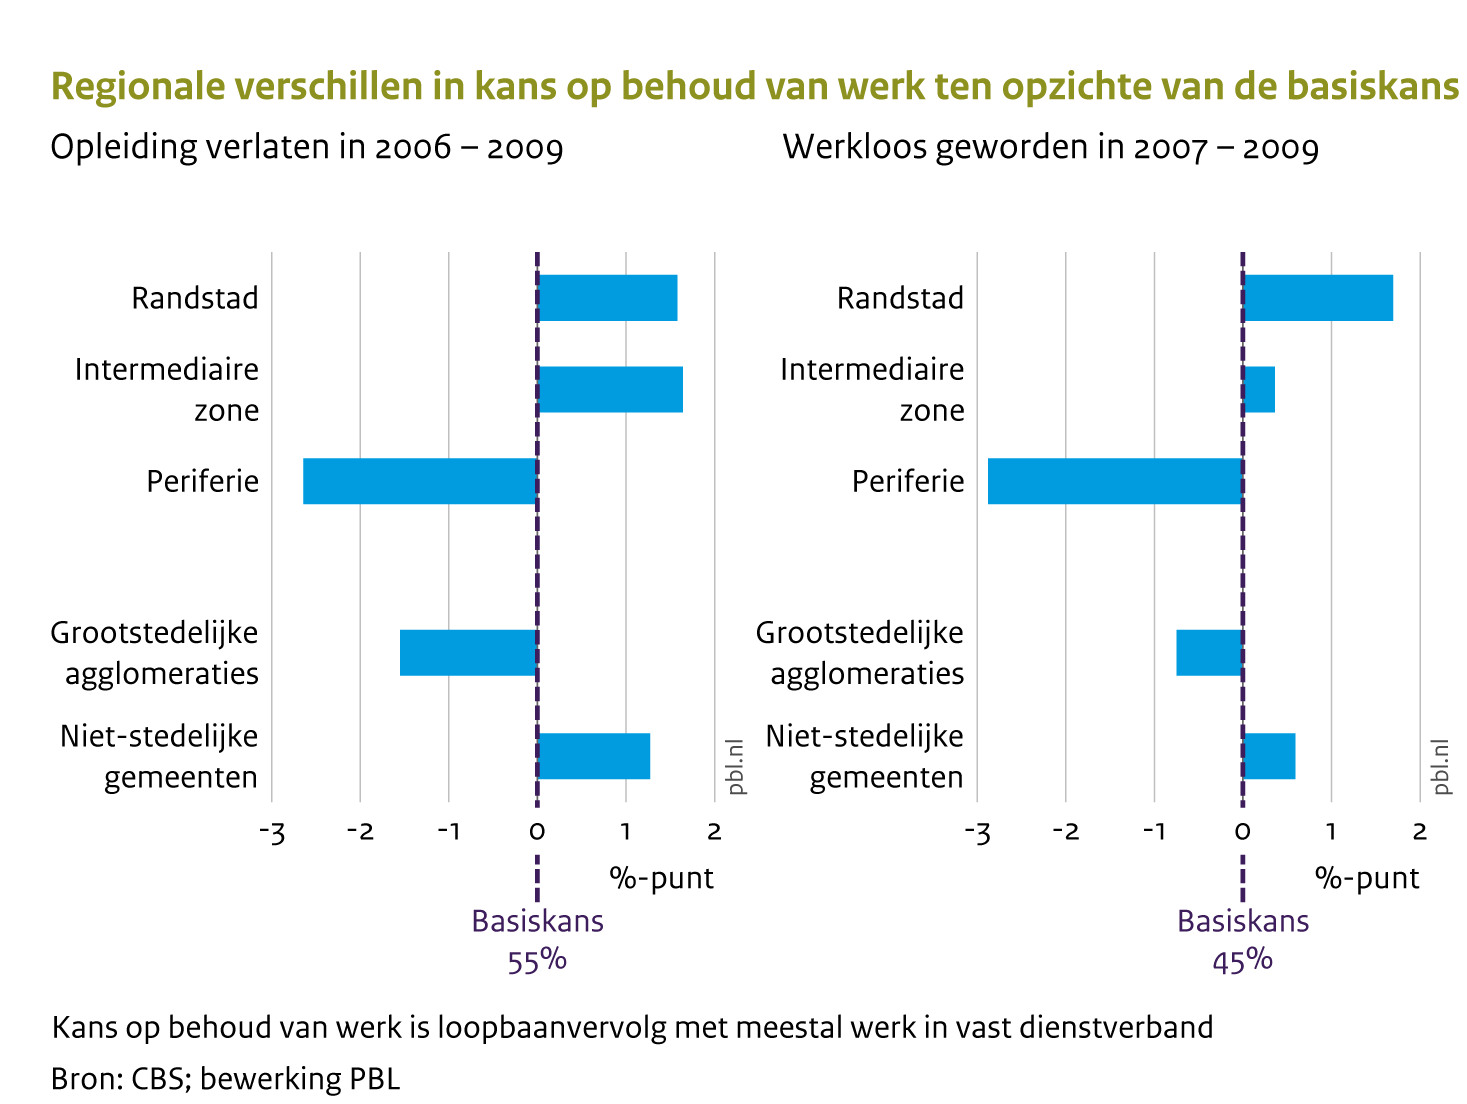 Starters op de arbeidsmarkt en voormalig werklozen uit de regio's in de periferie (noorden, oosten, Zeeland en Limburg) hebben minder kans op werkzekerheid dan vergelijkbare personen uit de rest van het land. Ook in de 22 grootste steden hebben deze groepen minder kans op werkzekerheid.